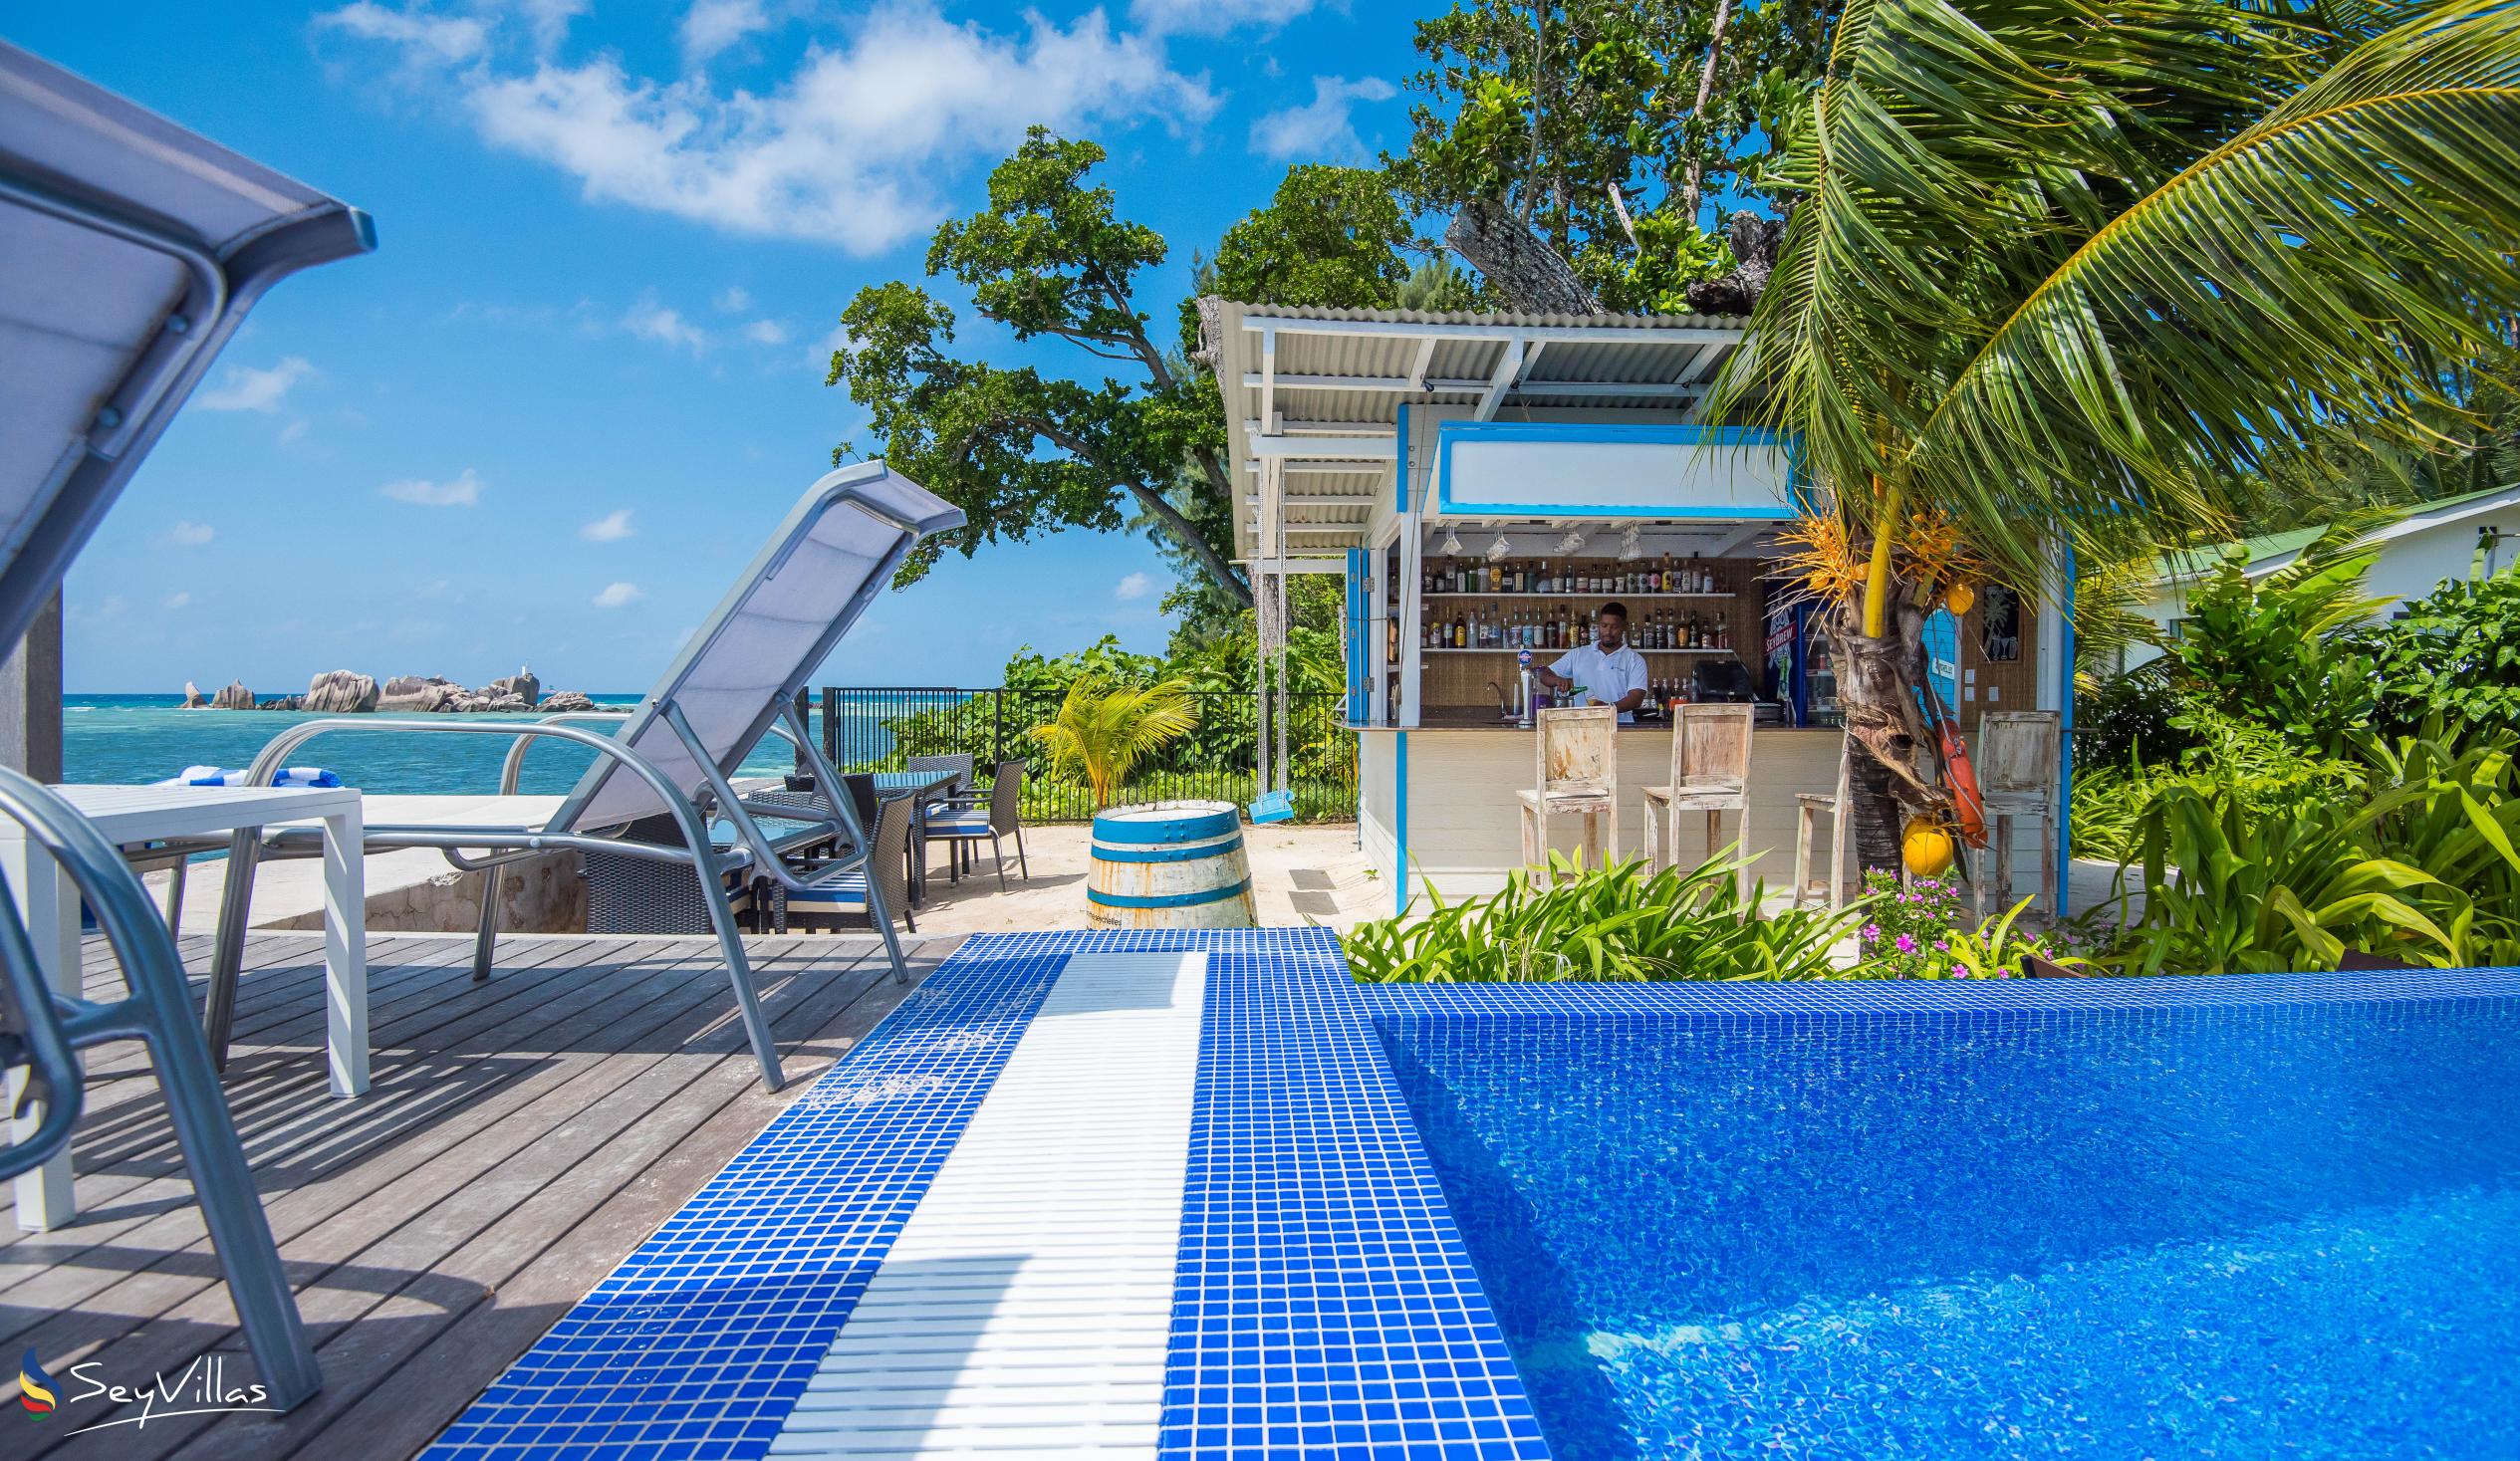 Foto 36: Le Nautique Luxury Waterfront Hotel - Aussenbereich - La Digue (Seychellen)